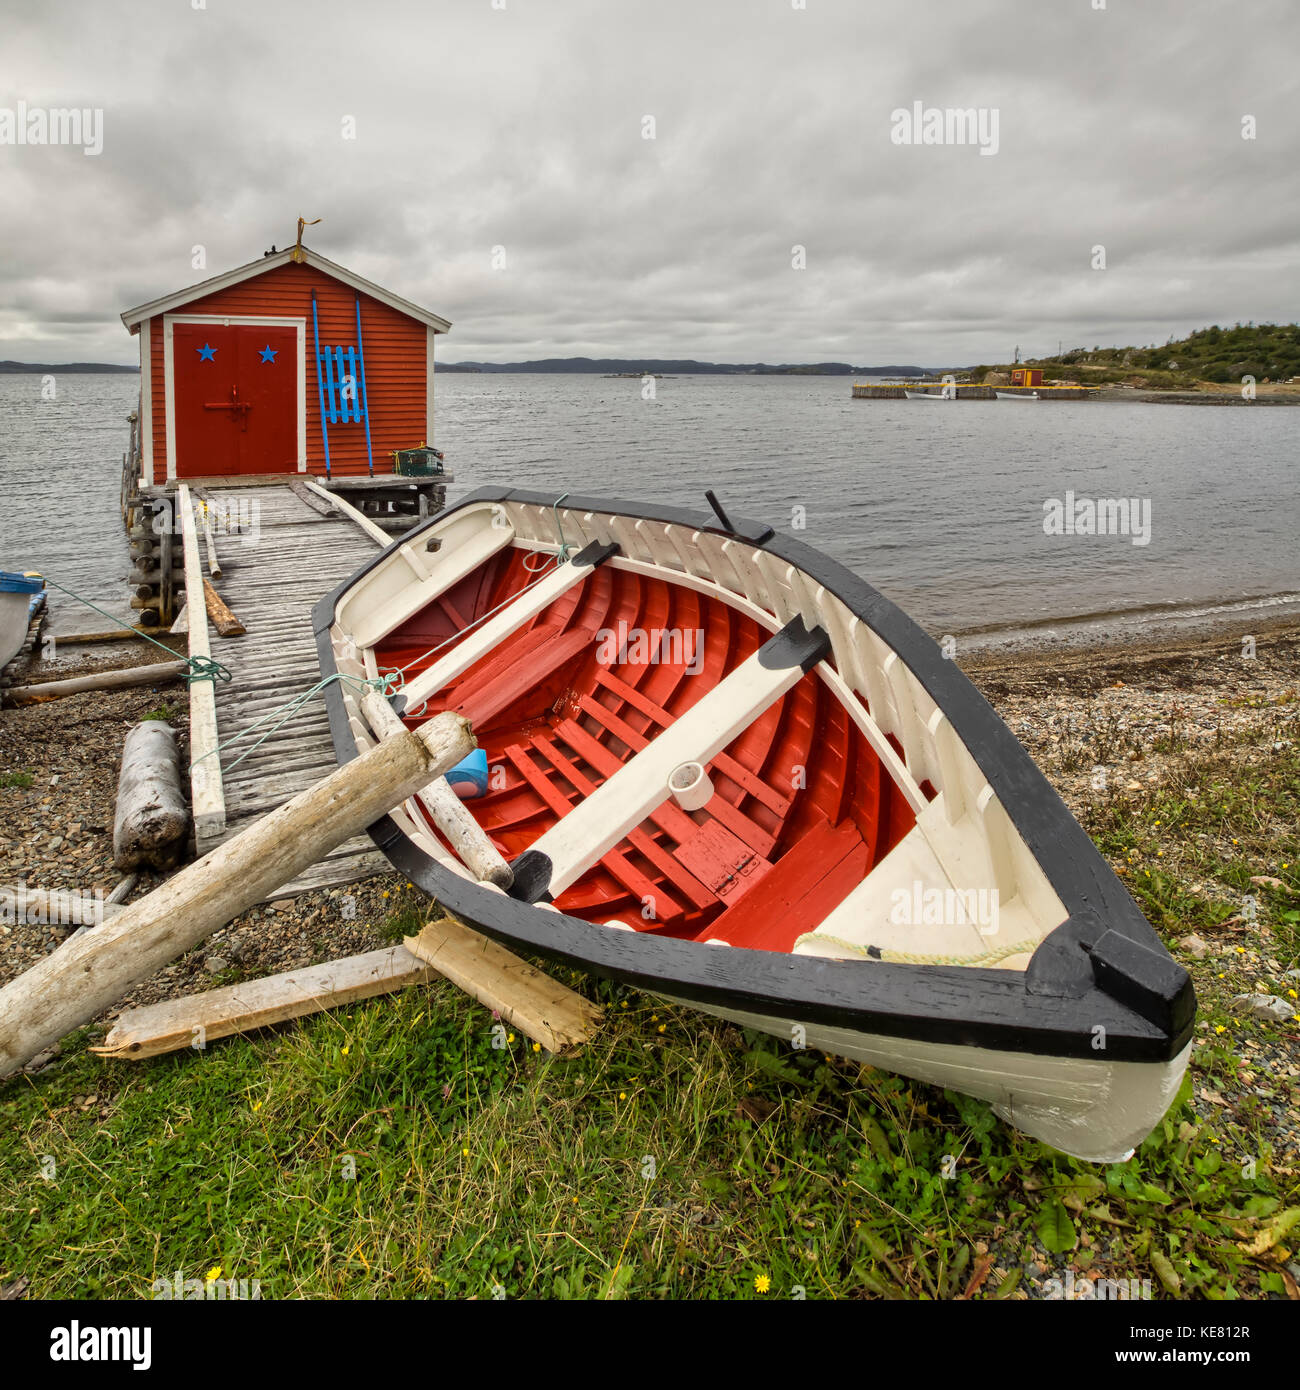 Un canoë rouge et blanc s'étend sur la rive avec un abri de pêche rouge le long du bord de l'eau de la côte Atlantique, Terre-Neuve, Canada Banque D'Images